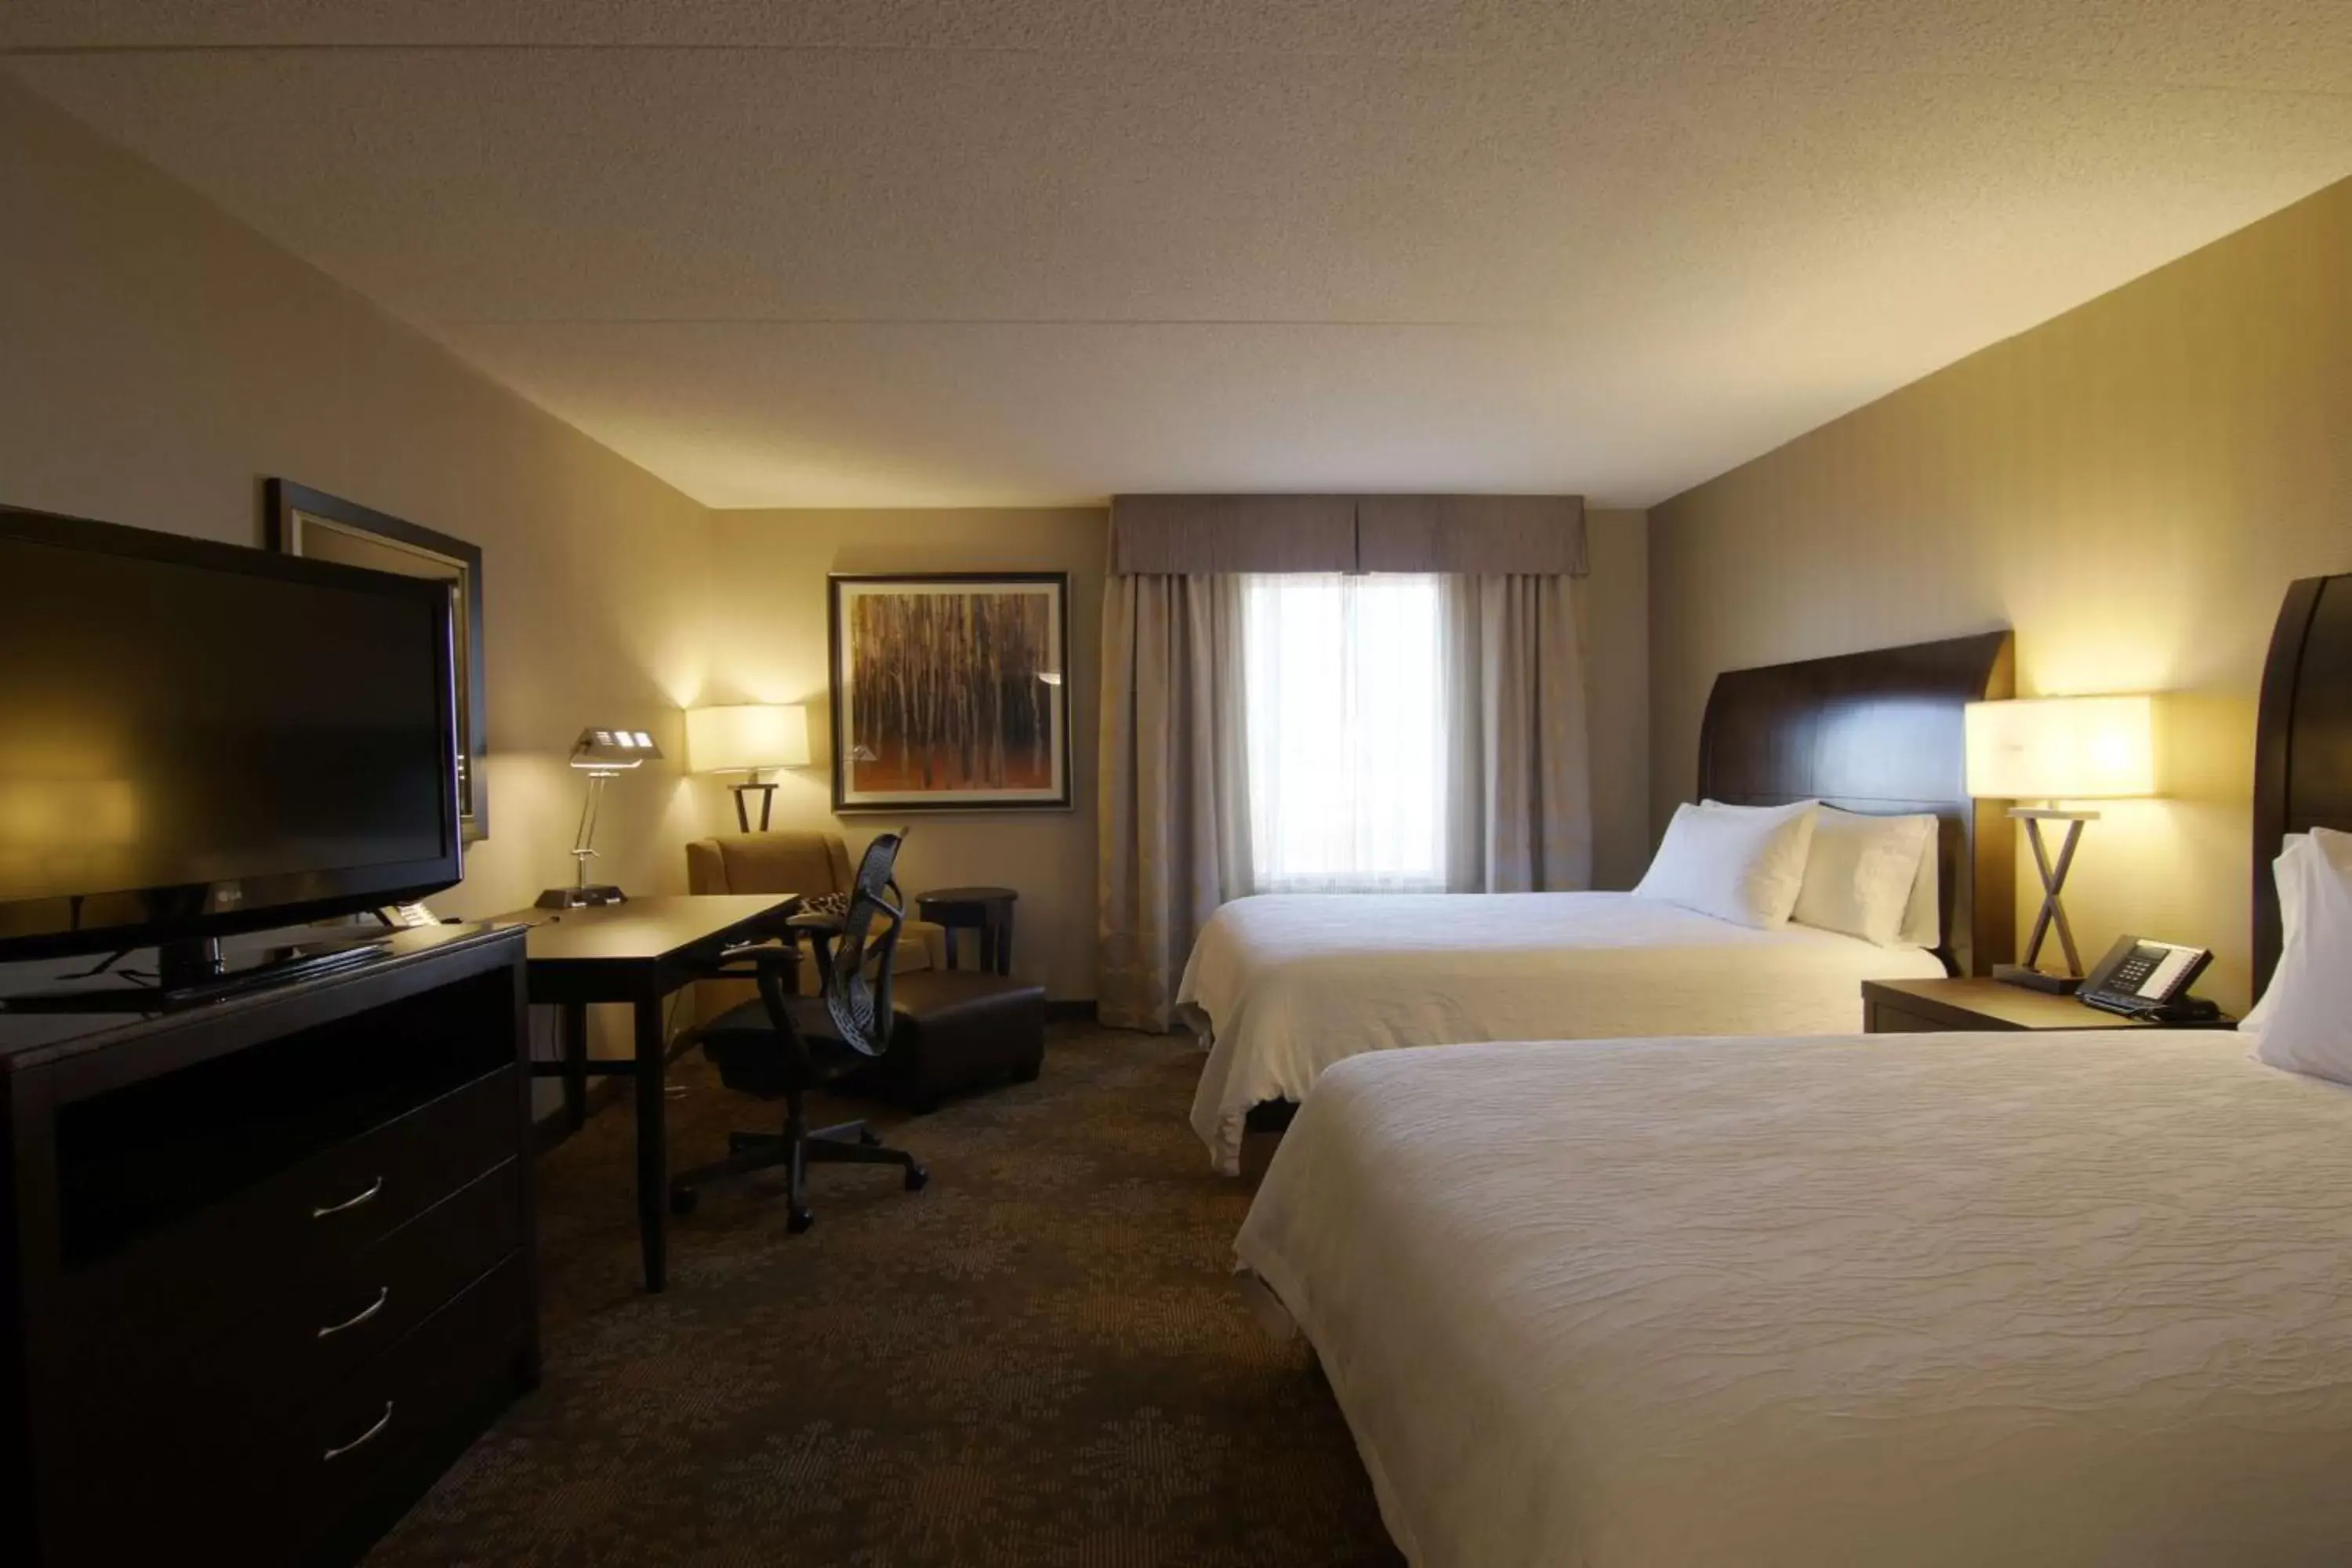 Bedroom, TV/Entertainment Center in Hilton Garden Inn Toronto/Brampton